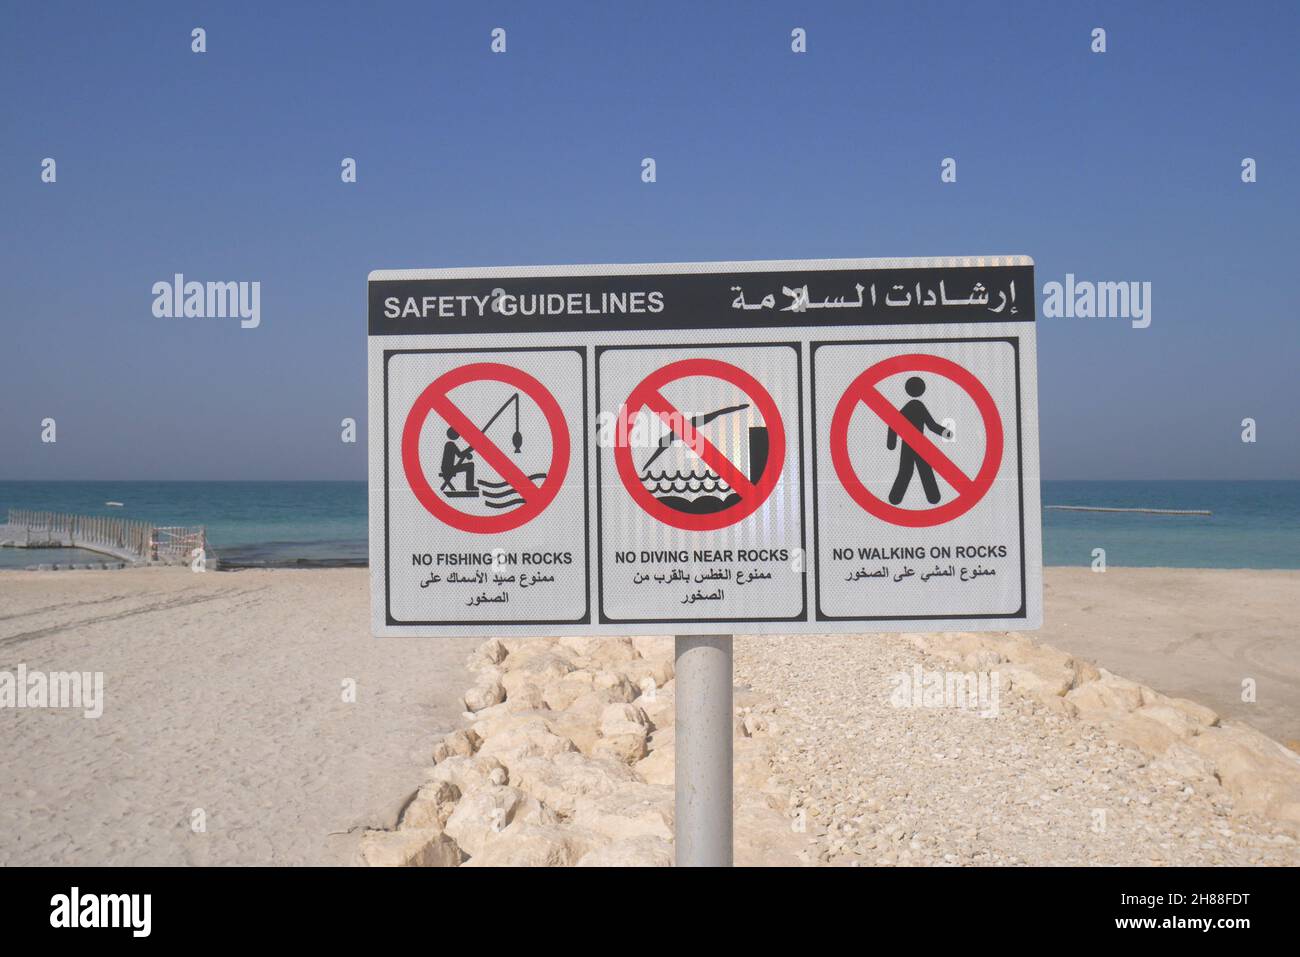 Linee guida sulla sicurezza in arabo e inglese che stabilisce norme di sicurezza e altre norme, Bilaj al Jazayer Beach, Regno del Bahrain Foto Stock